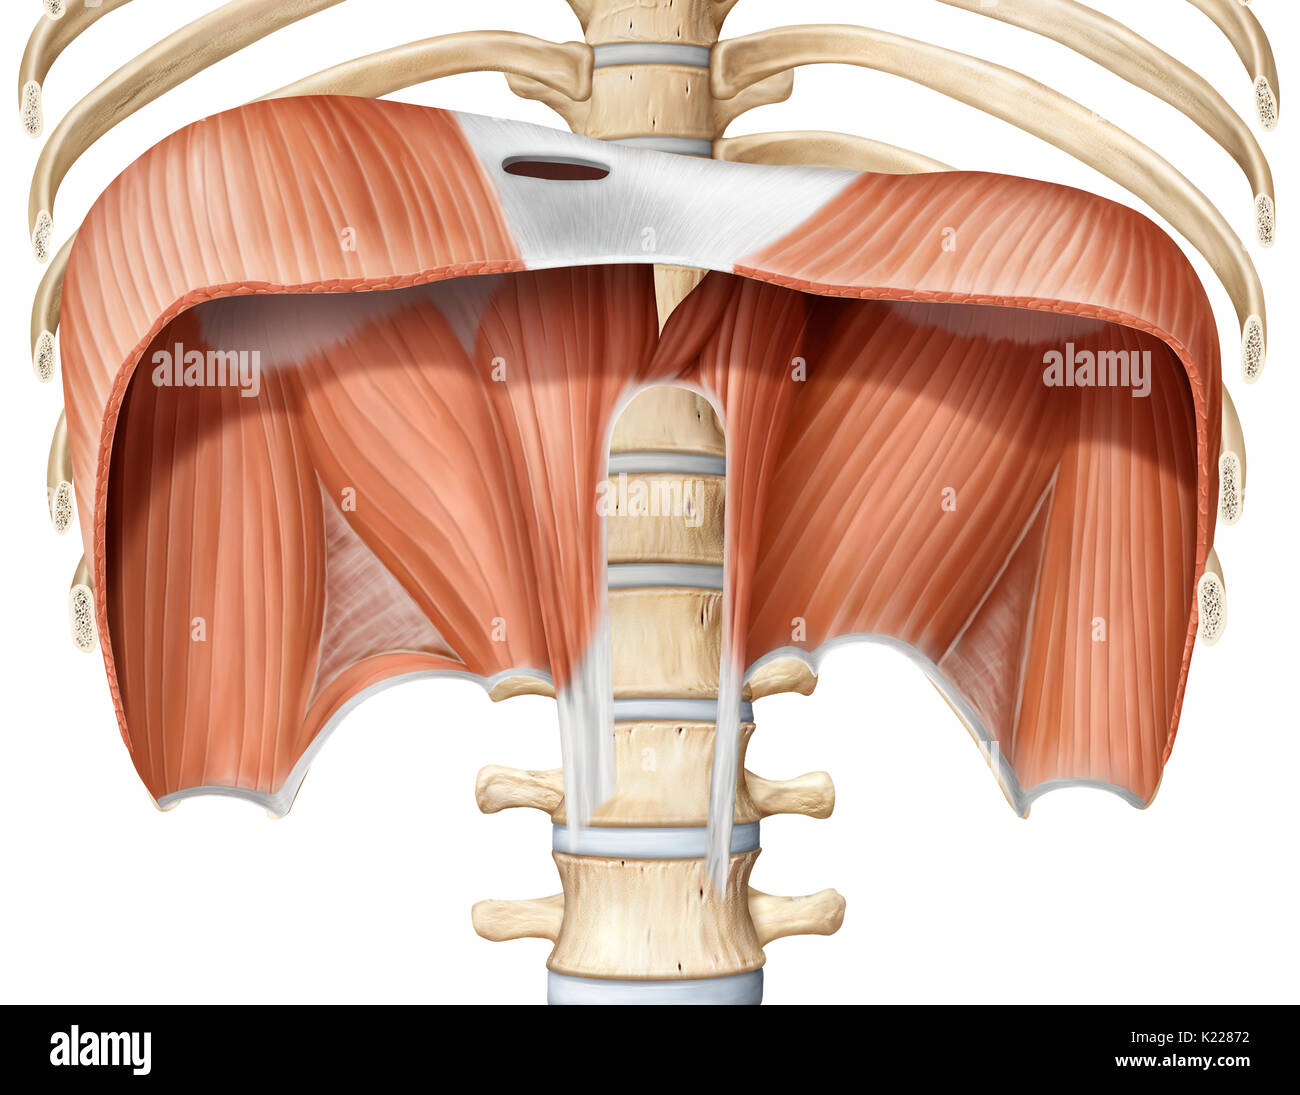 Muscle principal de l'inhalation séparant les cavités du thorax et l'abdomen ; la contraction augmente la taille de la cavité thoracique, entraînant les poumons se déployer et prendre dans l'air. Banque D'Images